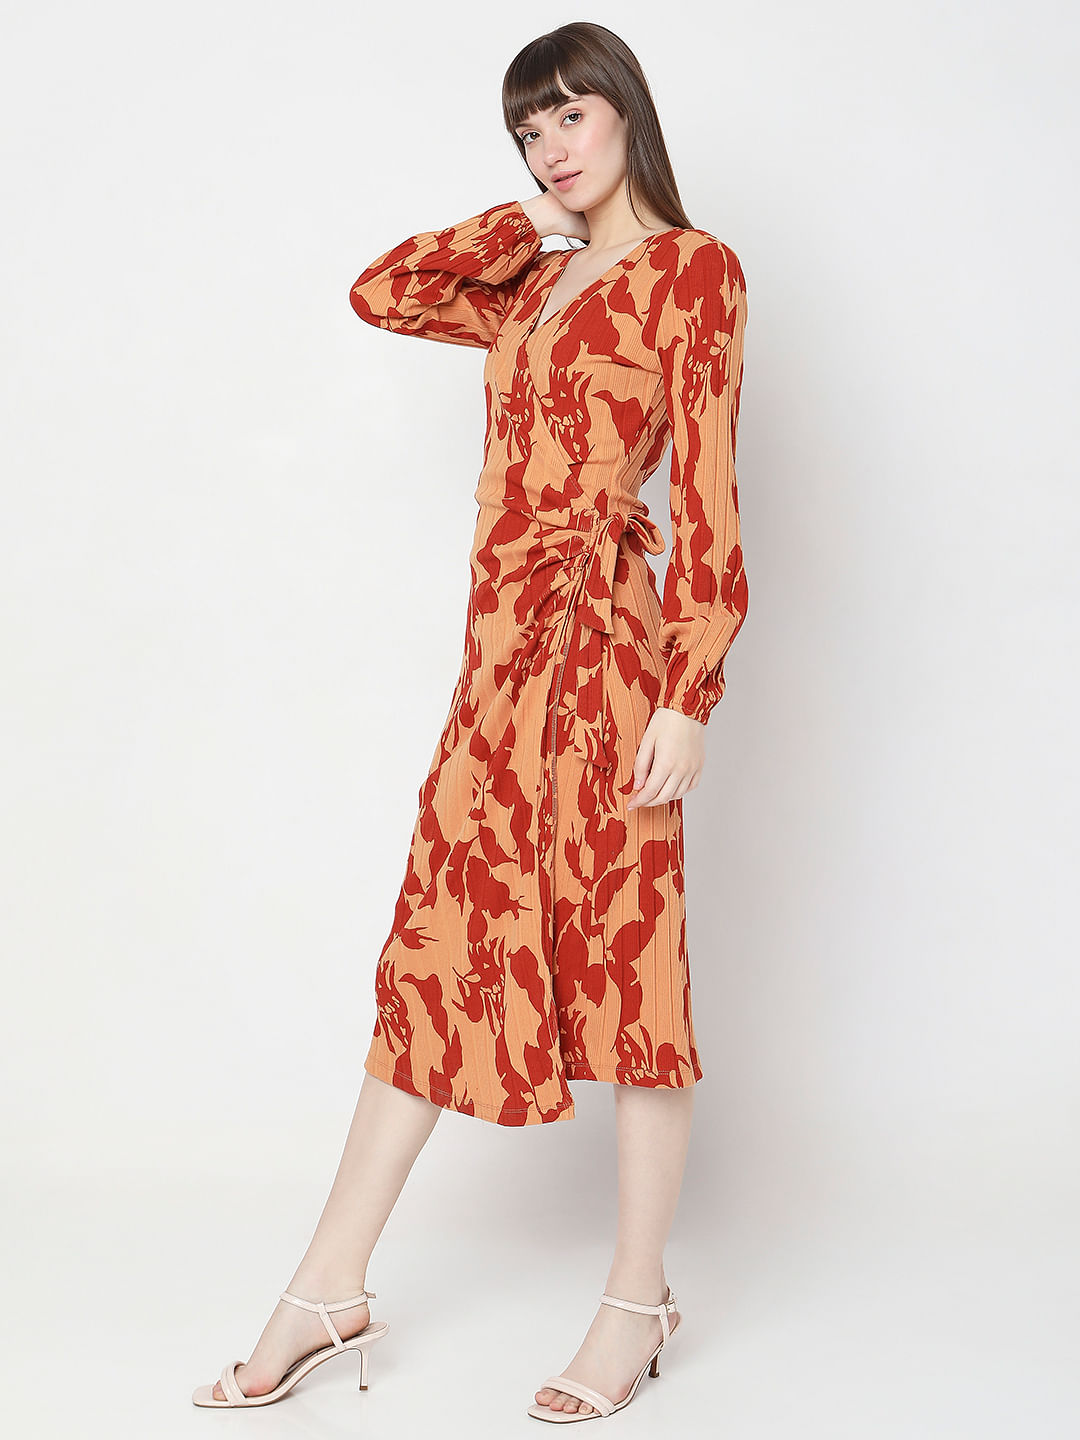 Boohoo Faye Floral Print Strappy Midi Bodycon Dress, $35 | BooHoo |  Lookastic